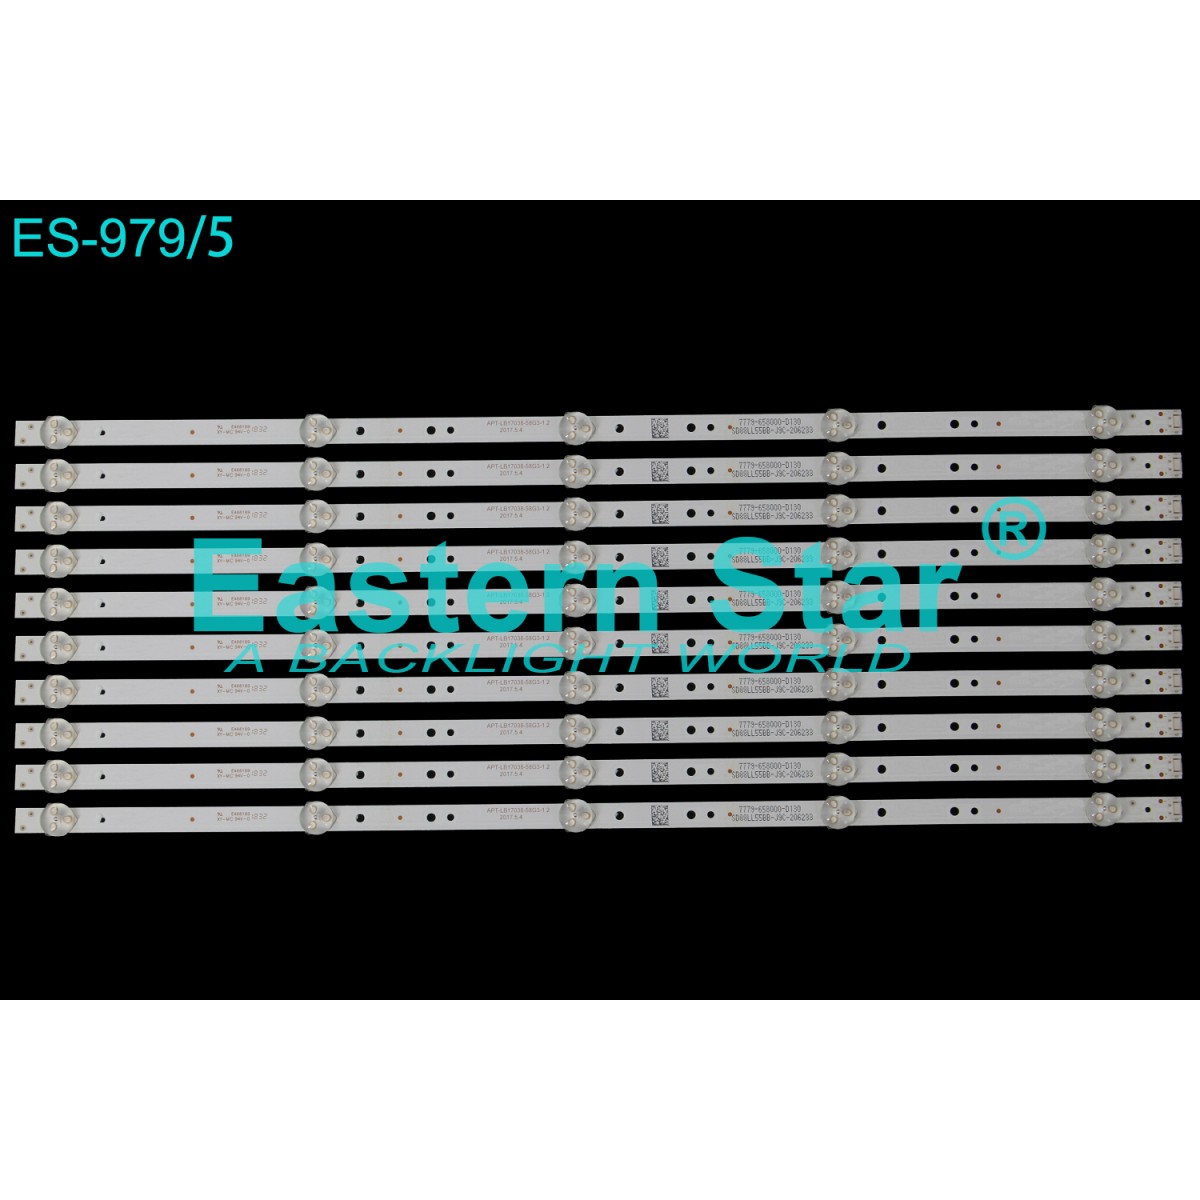 ES-979, BARCELONA 58 GCU 8905B, 58 GCU 8900B, A58L 8870 5B, B58L 8870 5B, APT-LB17038-58G3-1.2, JL.D58051330-202AS-M, V580DJ4-MD1, TV LED BAR